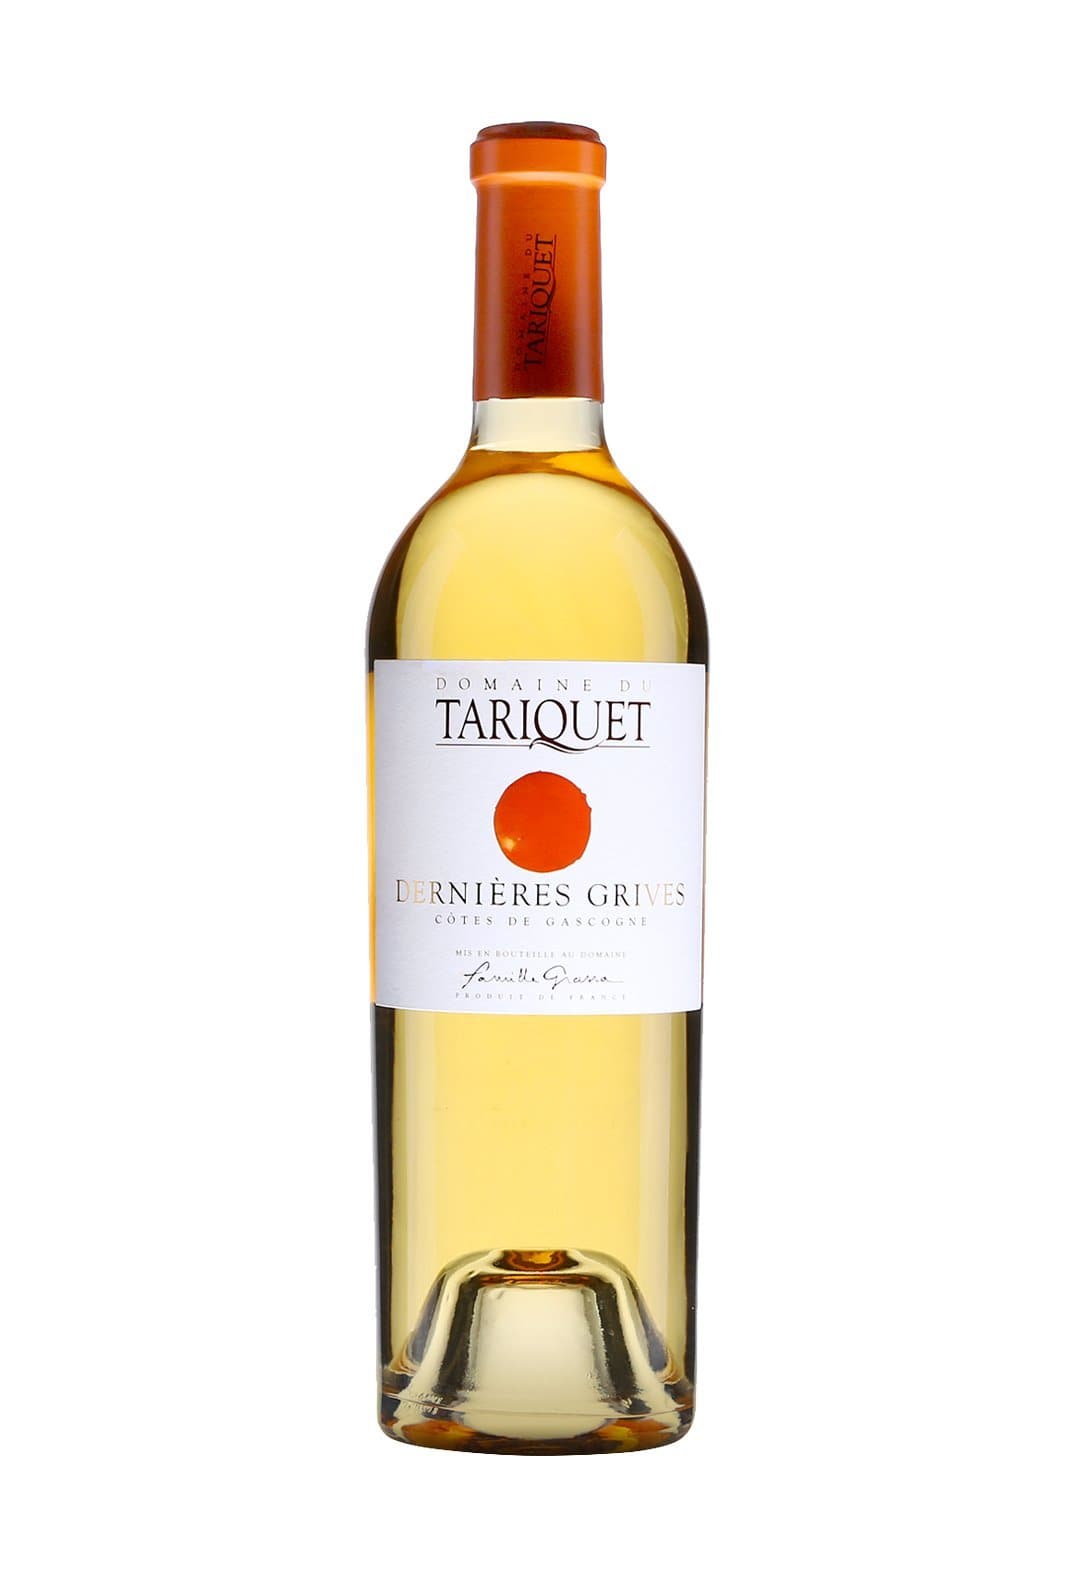 Domaine du Tariquet Wine 'Dernieres Grives' Petit Manseng 750ml | Wine | Shop online at Spirits of France